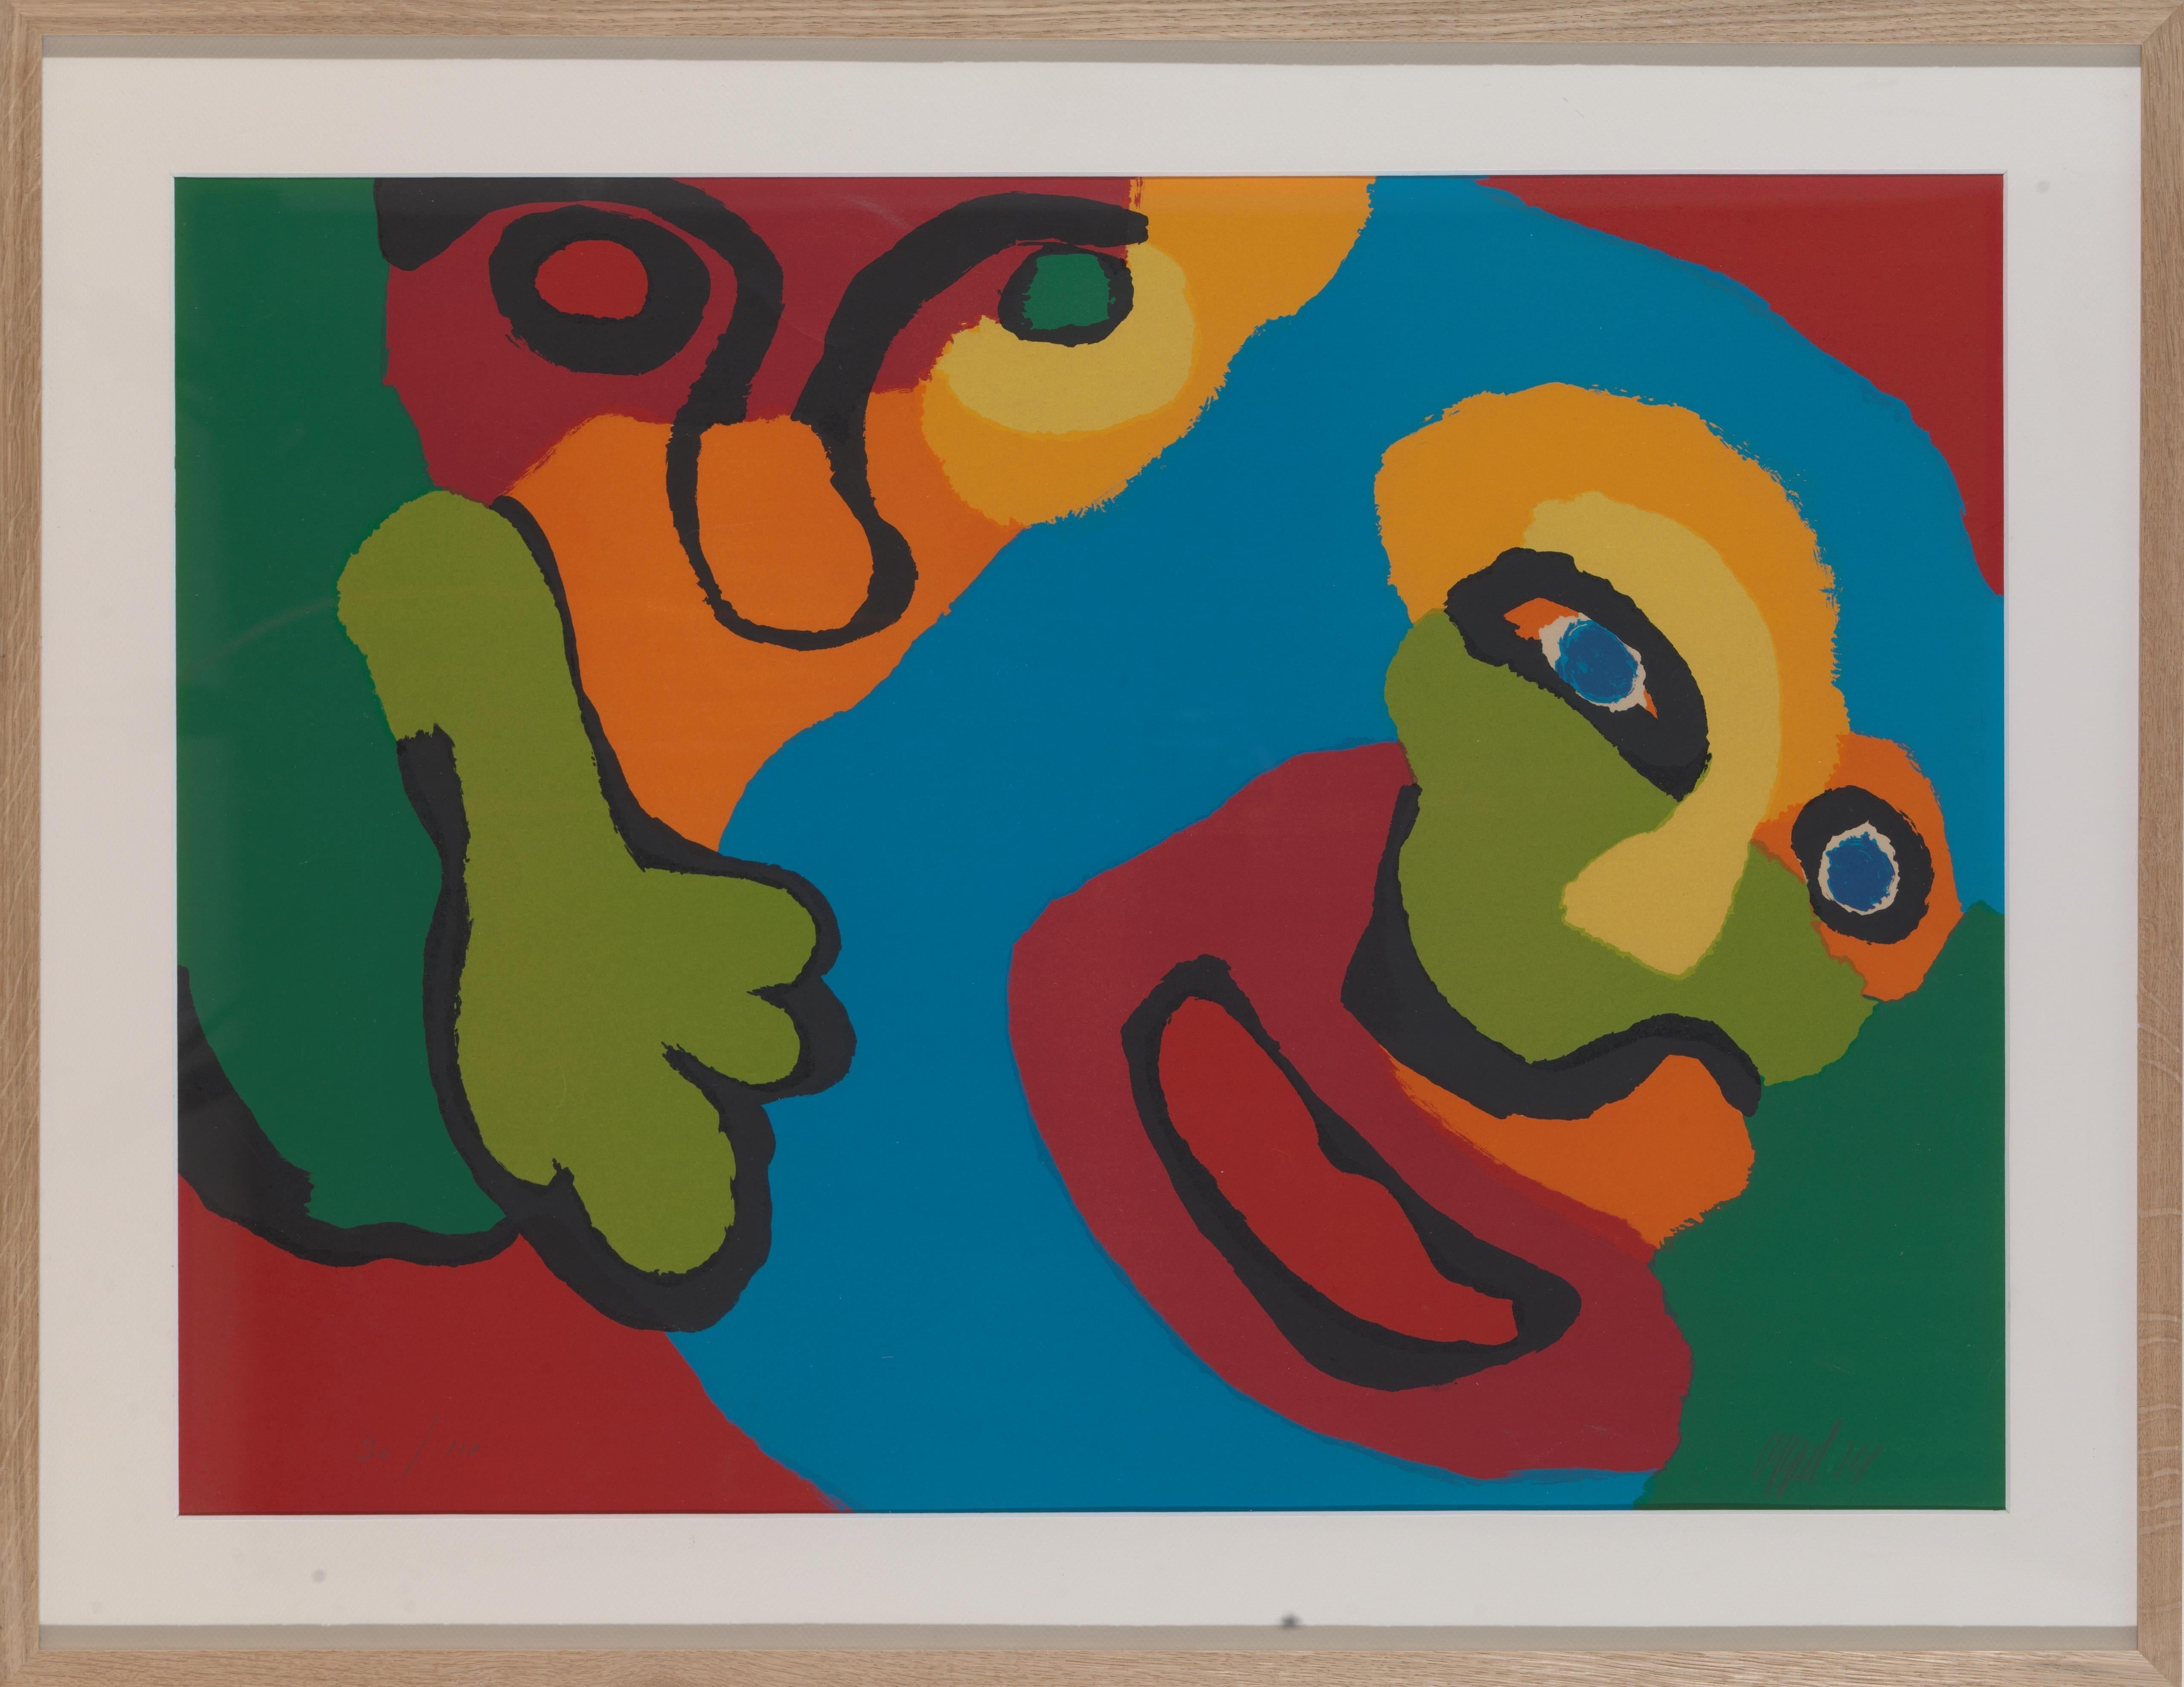 Sérigraphie vivante de 1974 de l'artiste Karel Appel (1921-2006) : composition et couleurs expressives et audacieuses. Signé au crayon : 